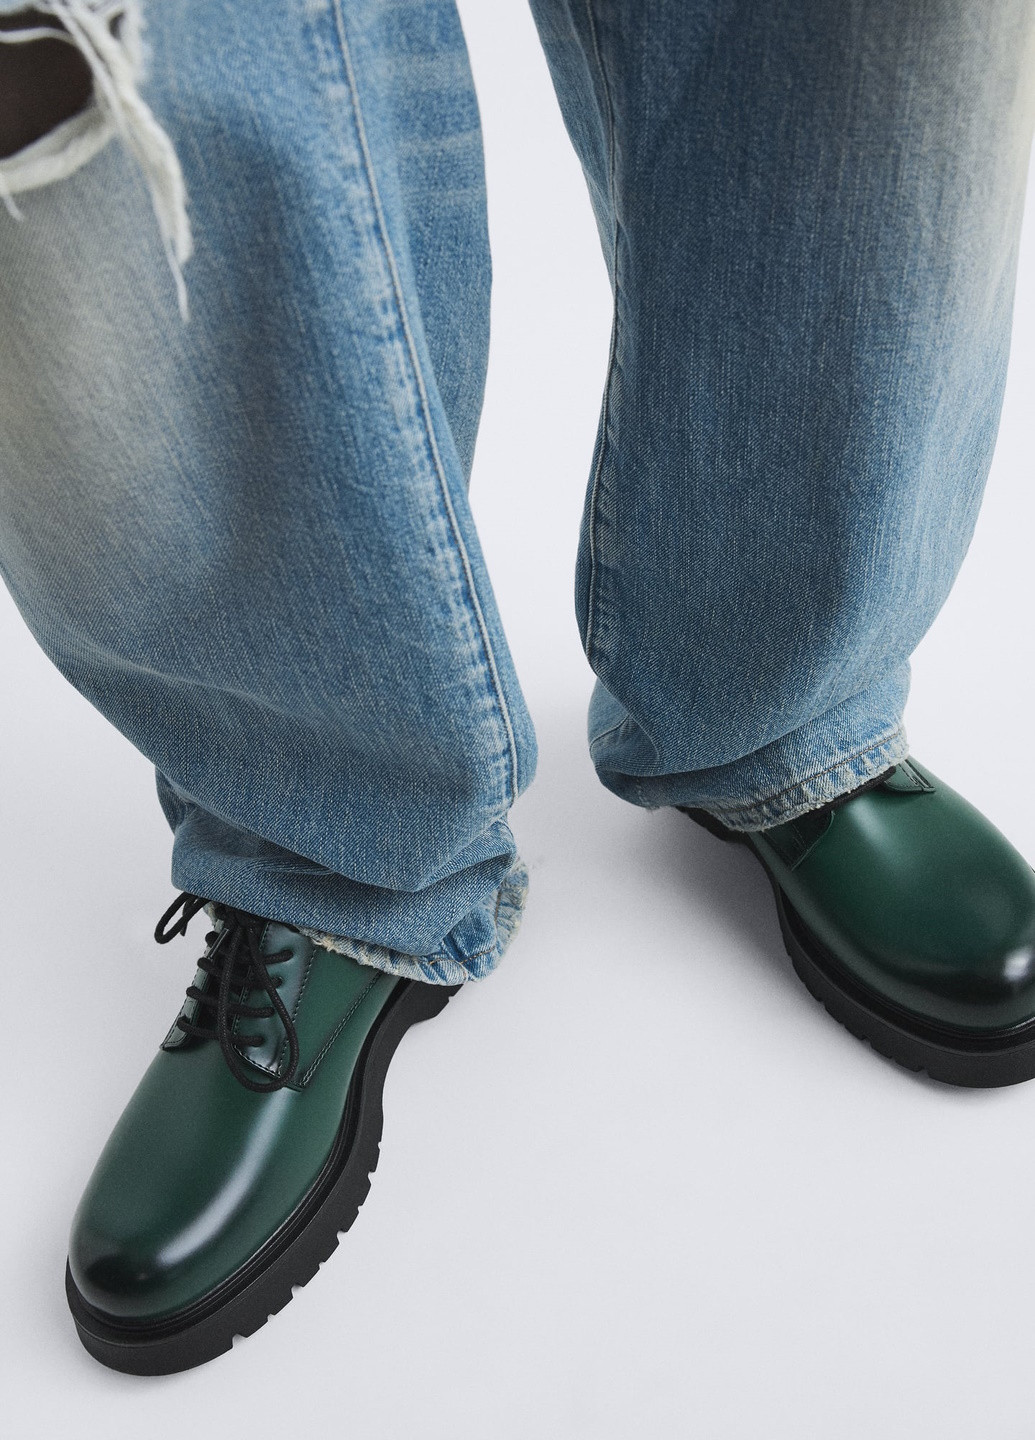 Зеленые классические туфли Zara